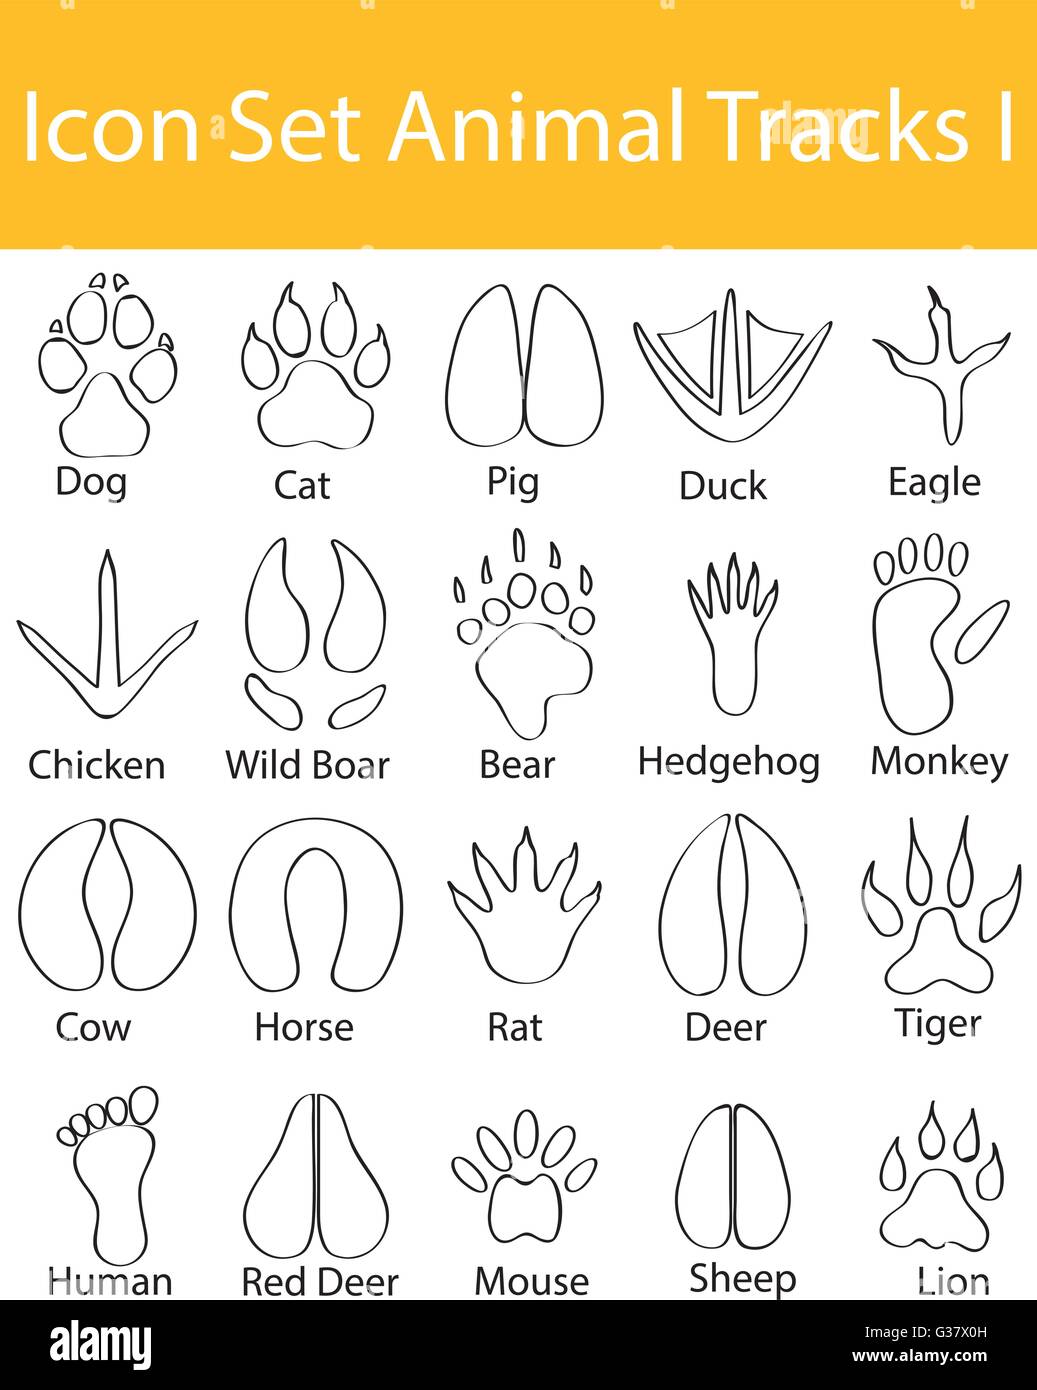 Disegnate Doodle rivestita icona impostare le tracce degli animali che ho con 20 icone per un utilizzo creativo in graphic design Illustrazione Vettoriale